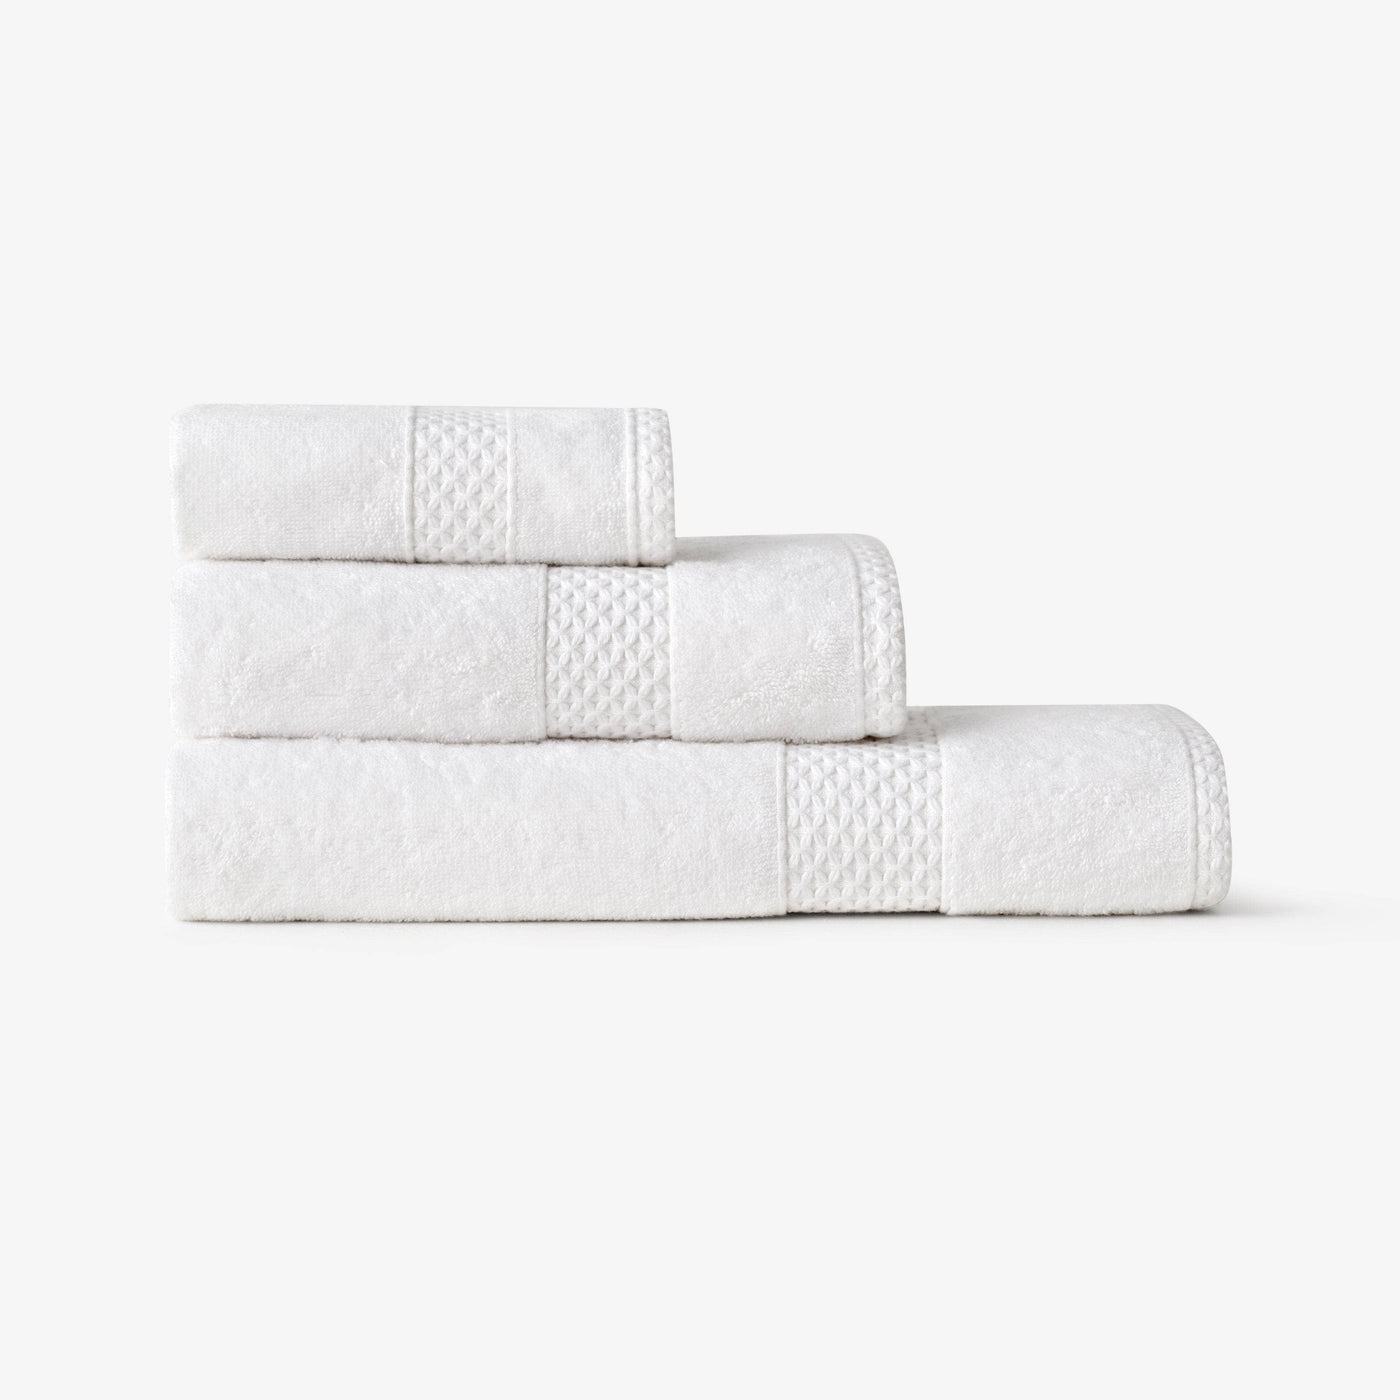 Aqua Fibro Extra Soft 100% Turkish Cotton Bath Towel, White Bath Towels sazy.com